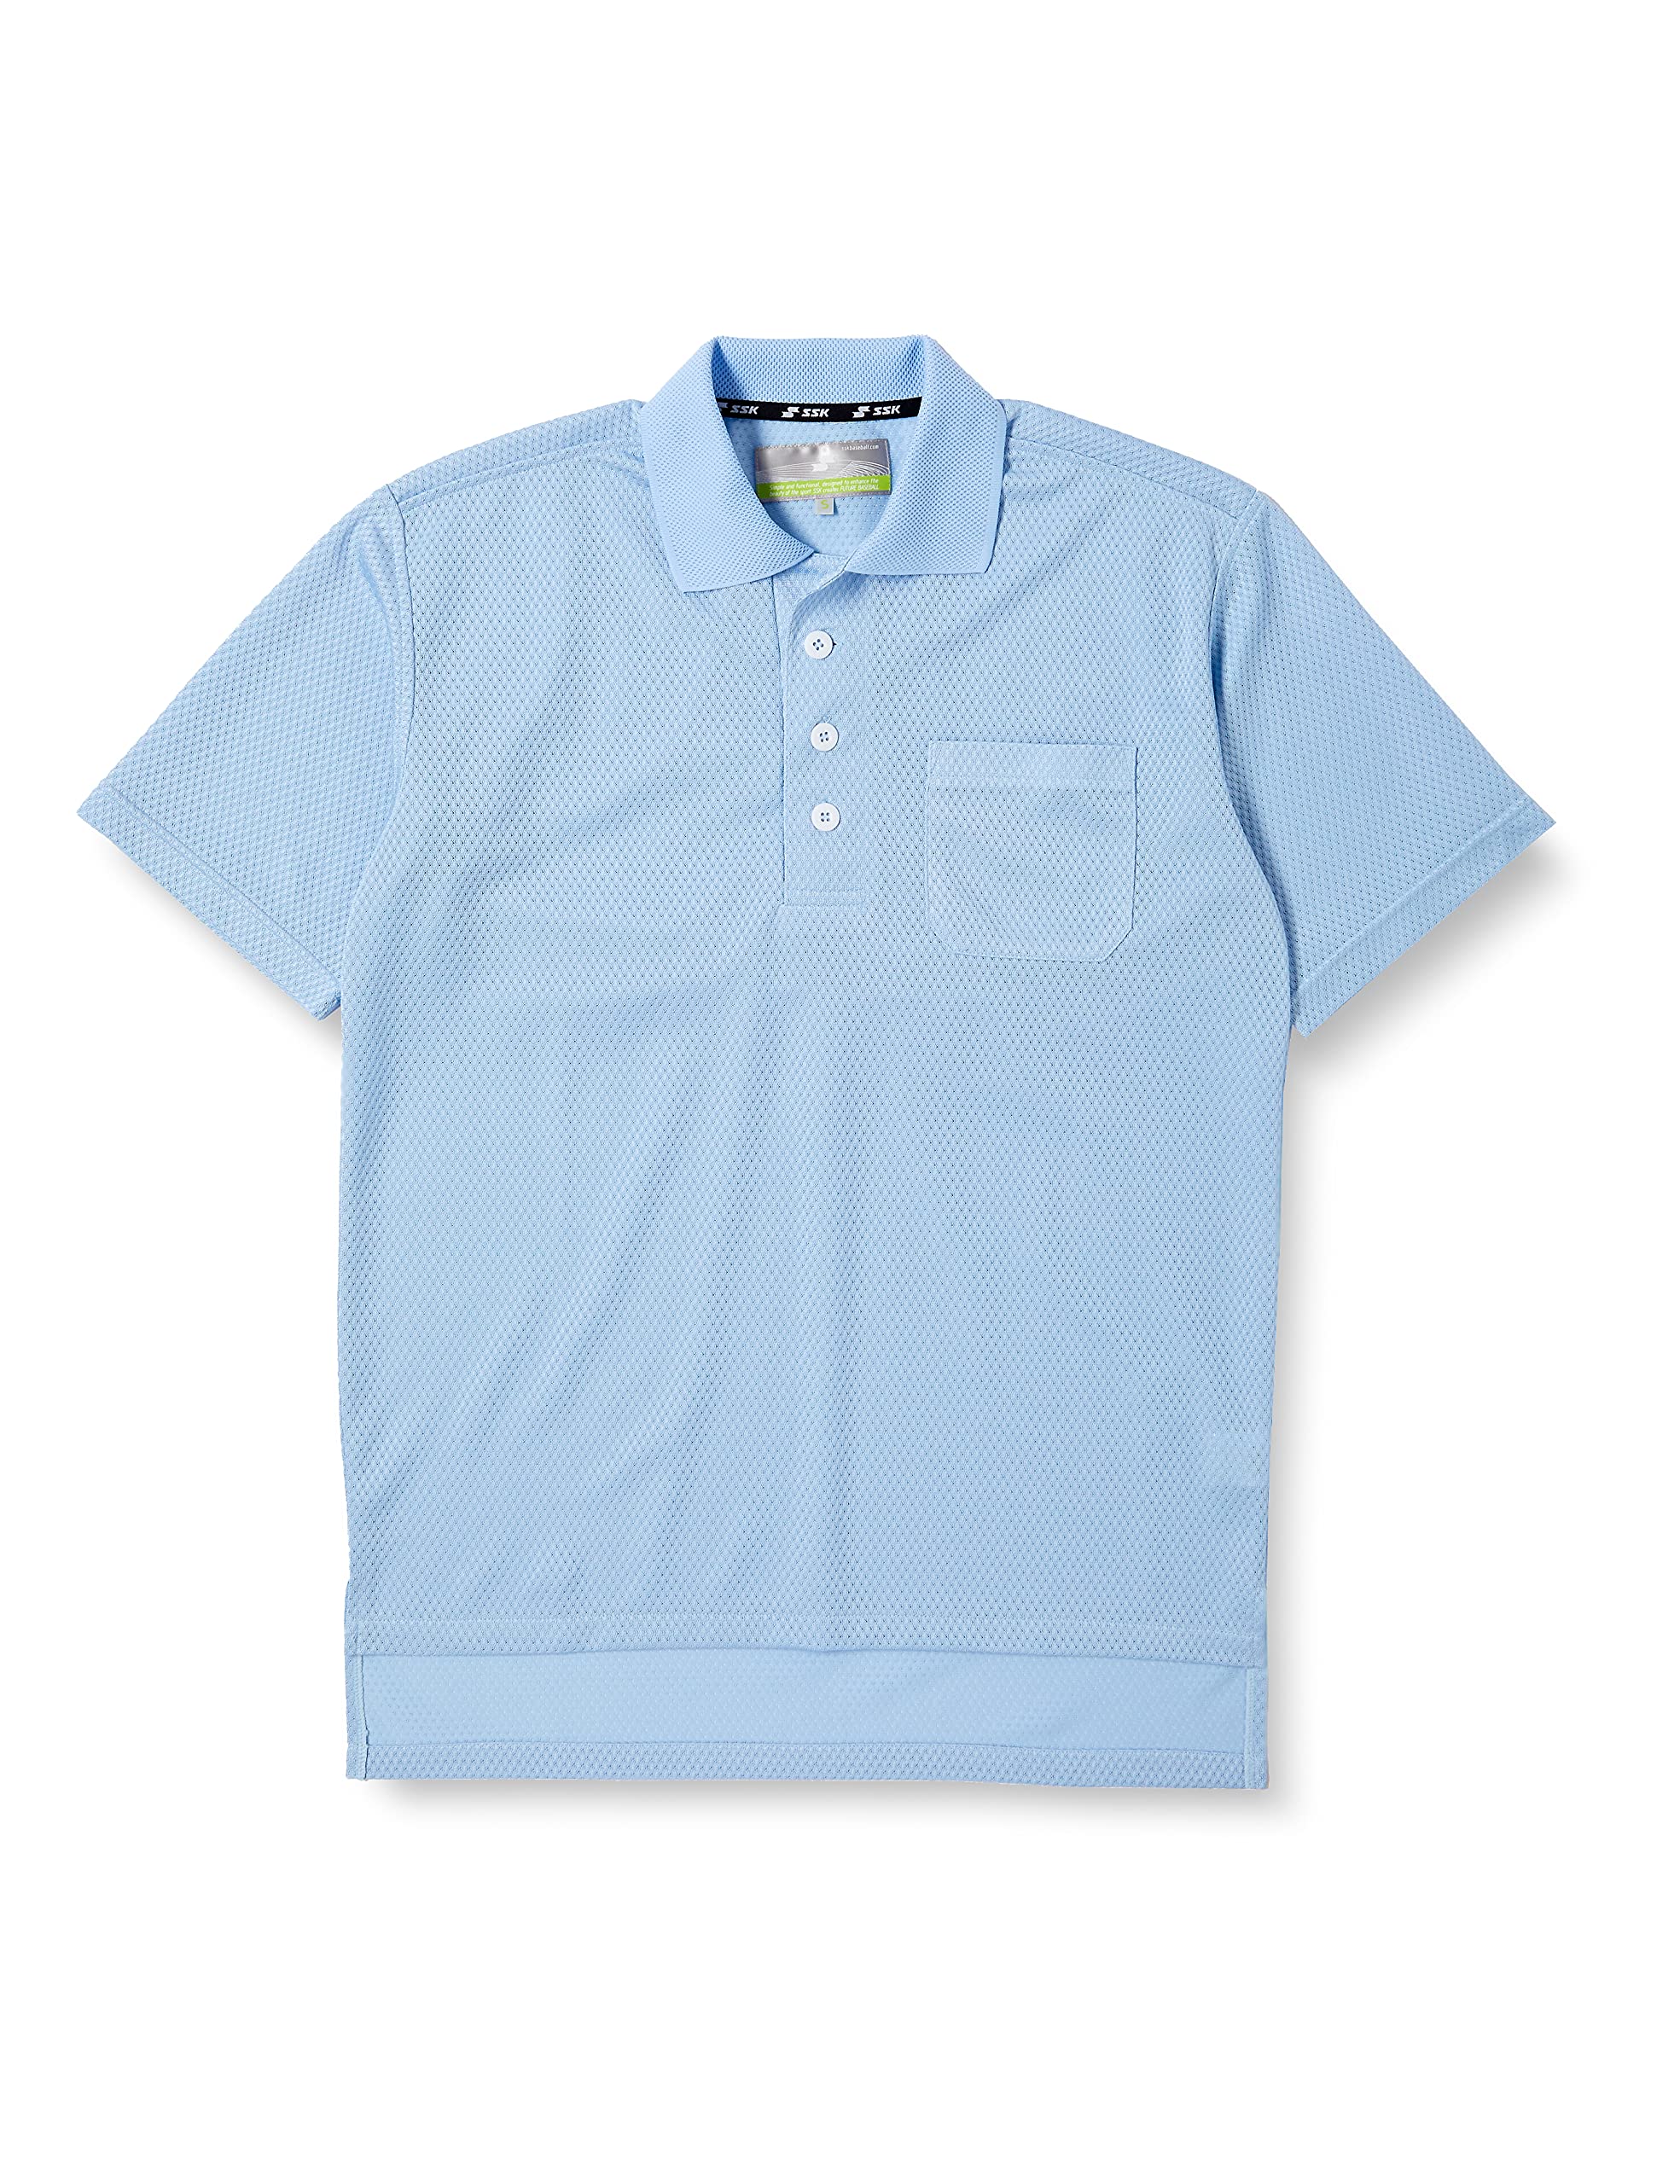 エスエスケイ 審判用半袖ポロシャツ UPW027 パウダーブルー L